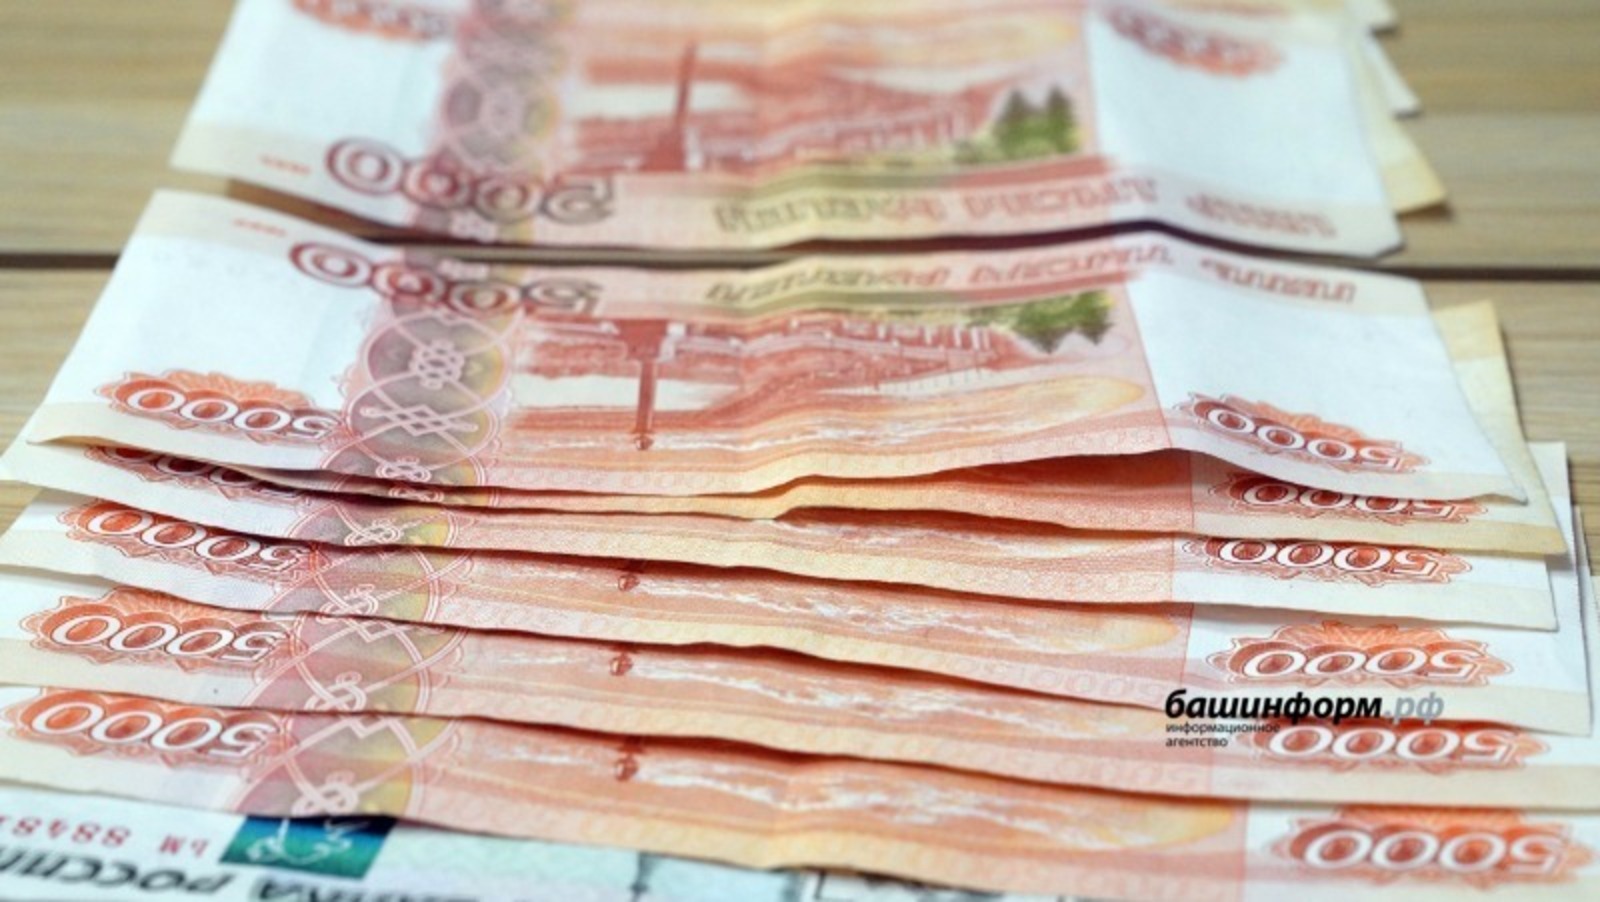 Индивидуальные предприниматели и самозанятые в Башкирии получат 250 тысяч рублей